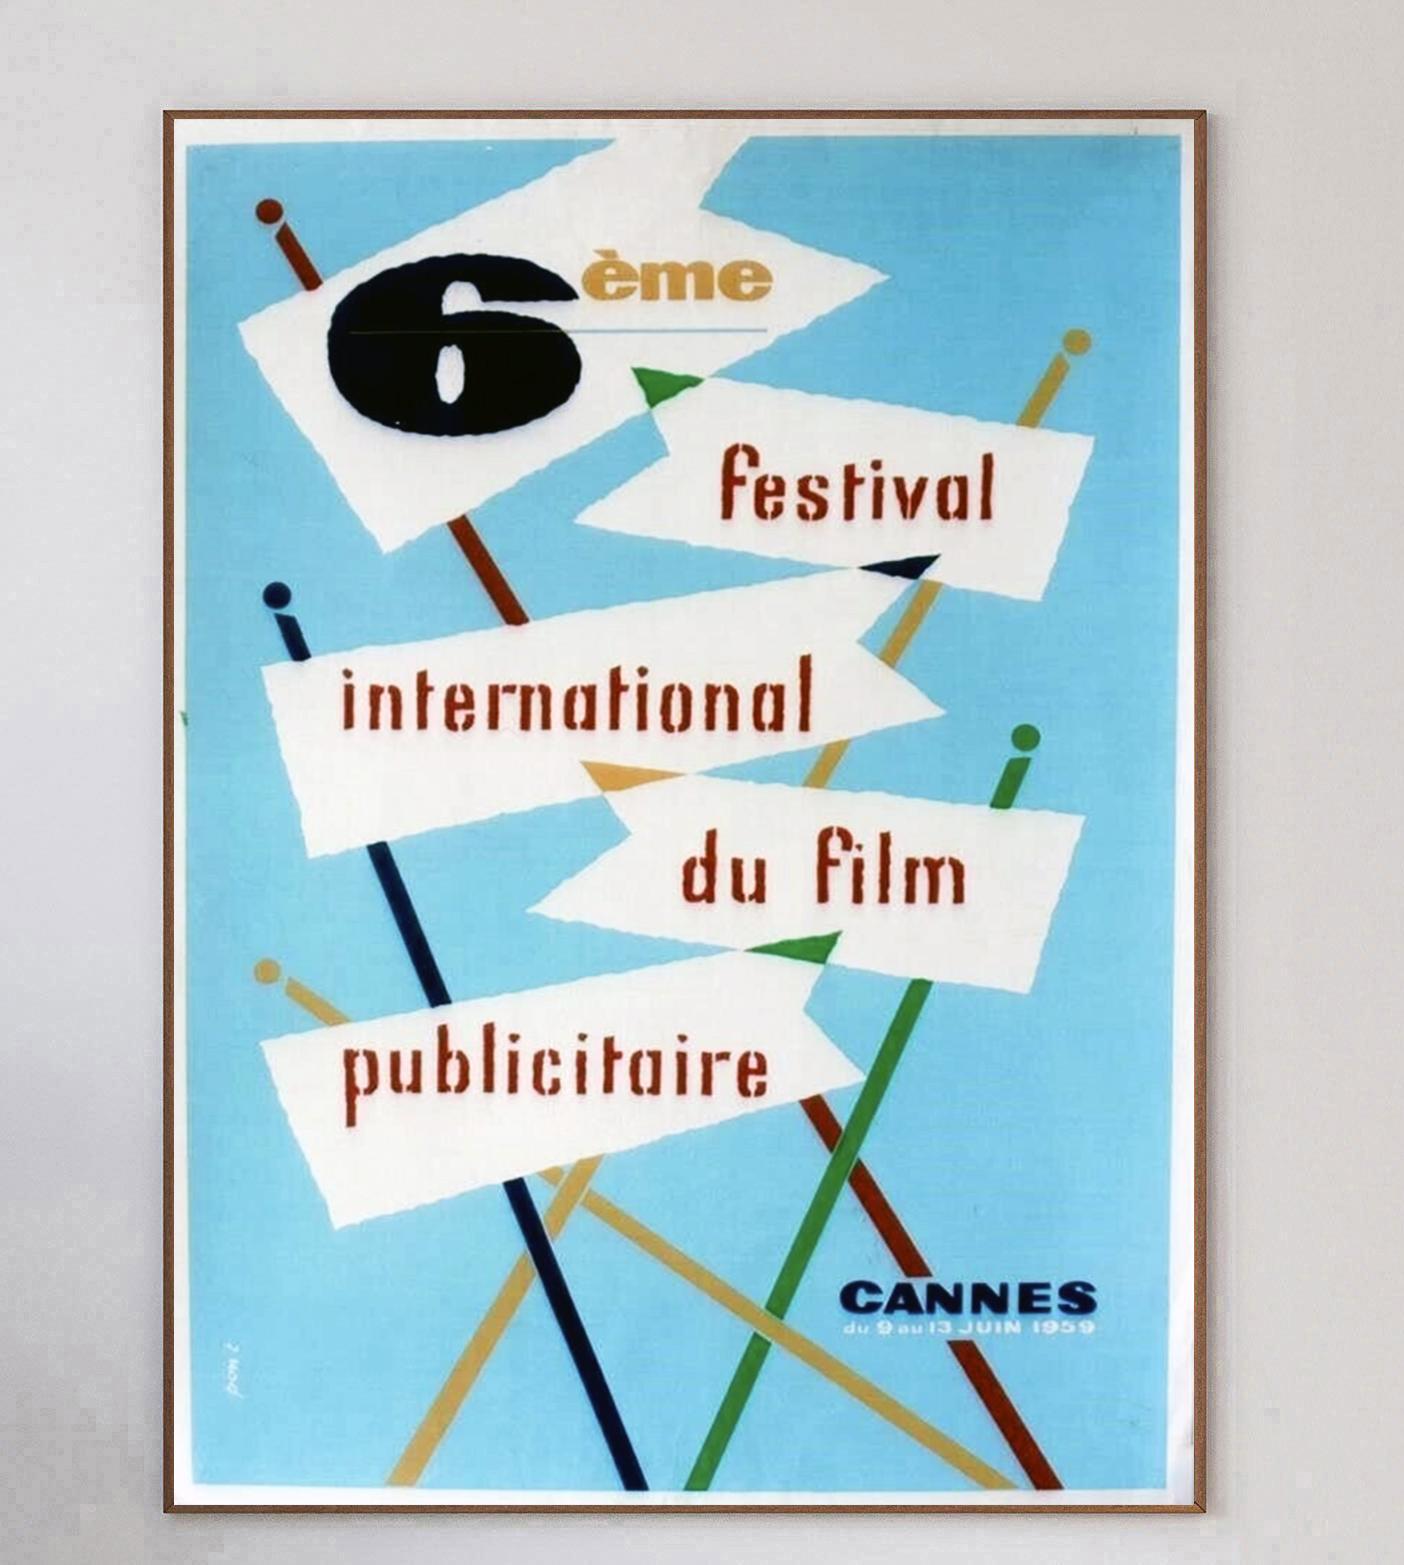 Cette affiche est celle du 6e Festival international du film de Cannes en 1959, qui s'est tenu du 9 au 13 juin à Cannes, en France. Le magnifique design est vibrant de couleurs avec un merveilleux design moderne du milieu du siècle par Pont. Lors du